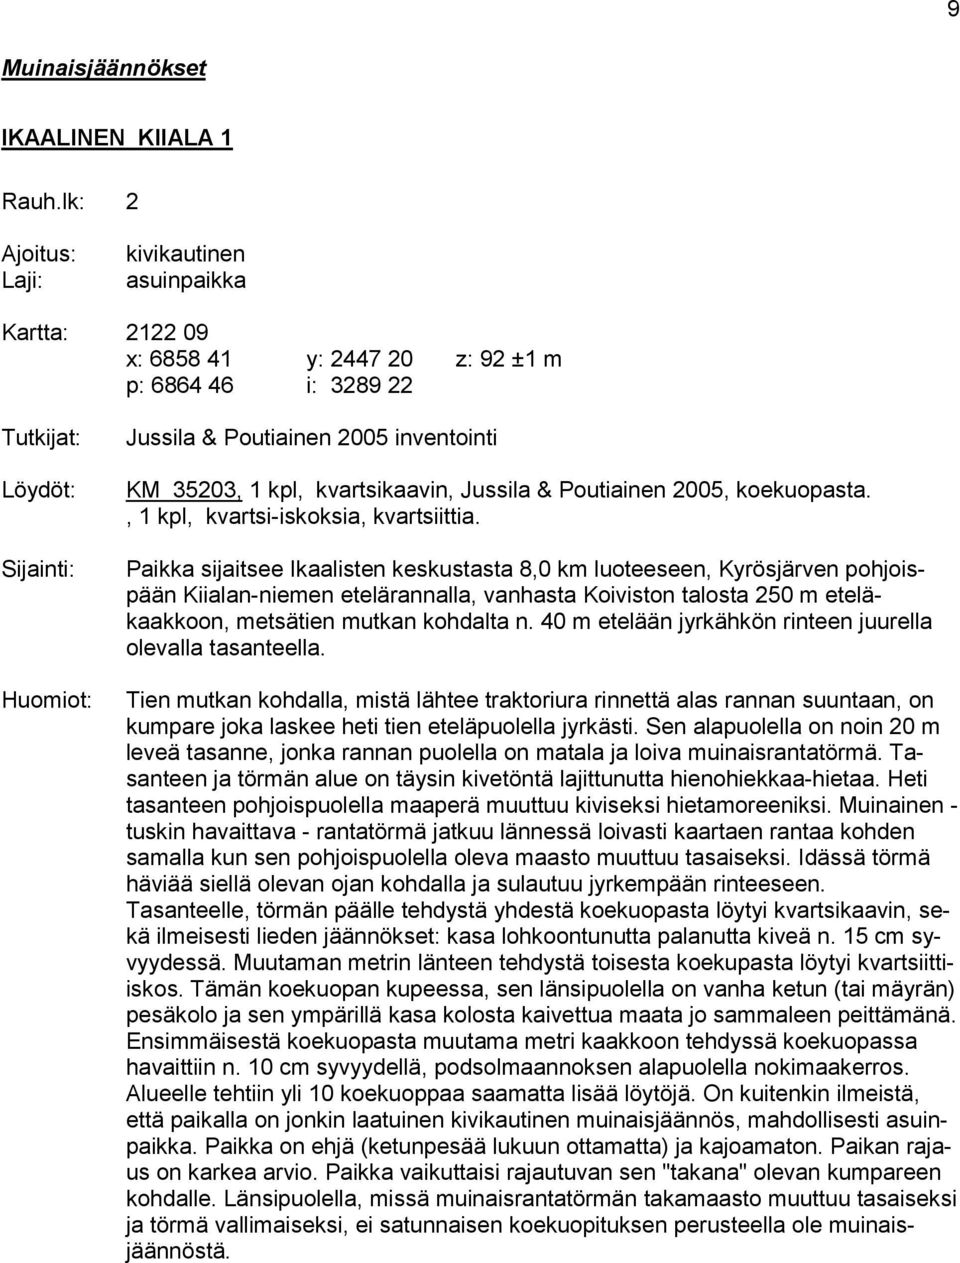 35203, 1 kpl, kvartsikaavin, Jussila & Poutiainen 2005, koekuopasta., 1 kpl, kvartsi-iskoksia, kvartsiittia.